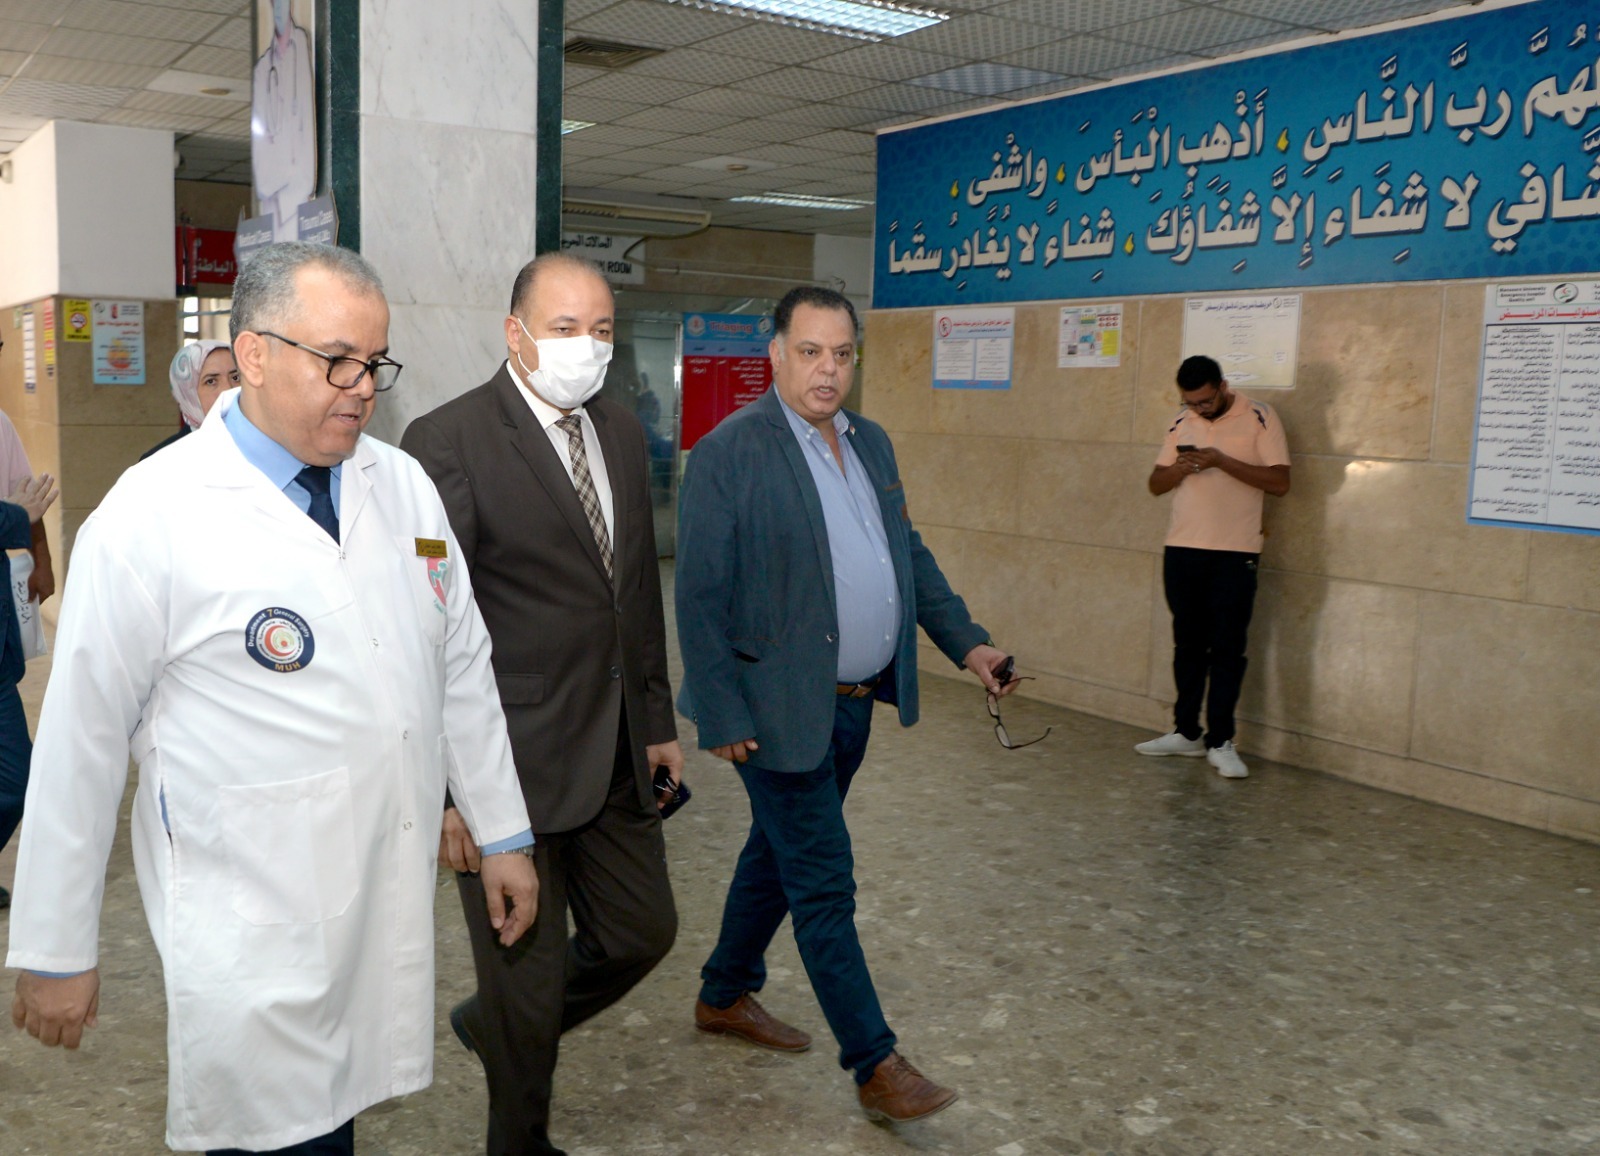 رئيس الجامعة في زيارة للطلاب بعد نقلهم لمستشفي جامعة المنصورة